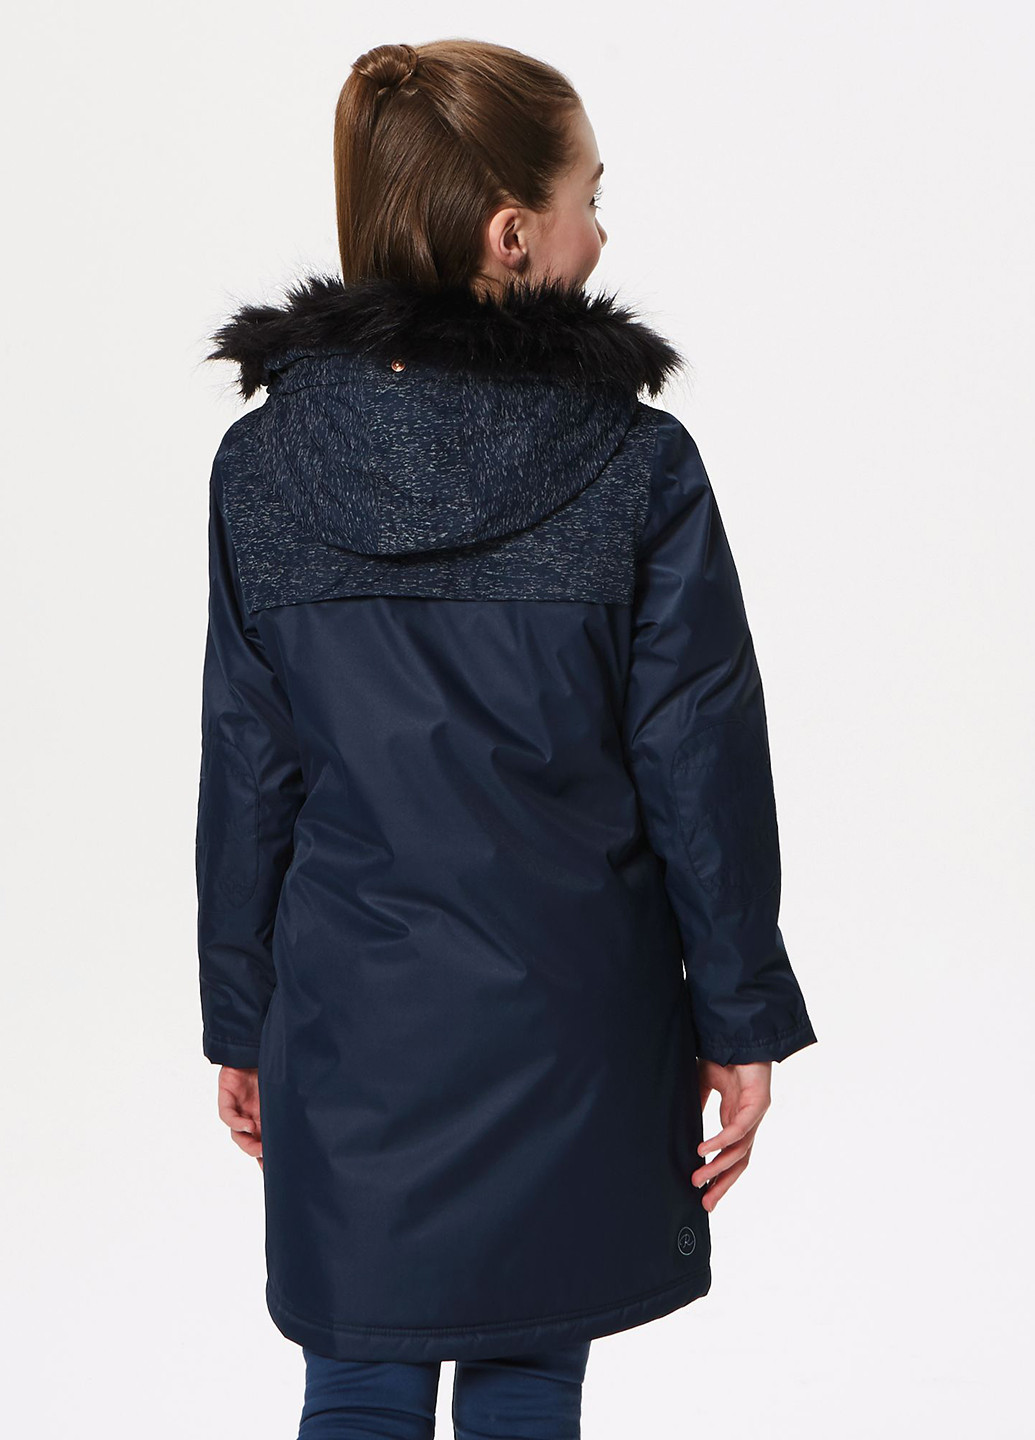 Темно-синяя зимняя куртка Regatta